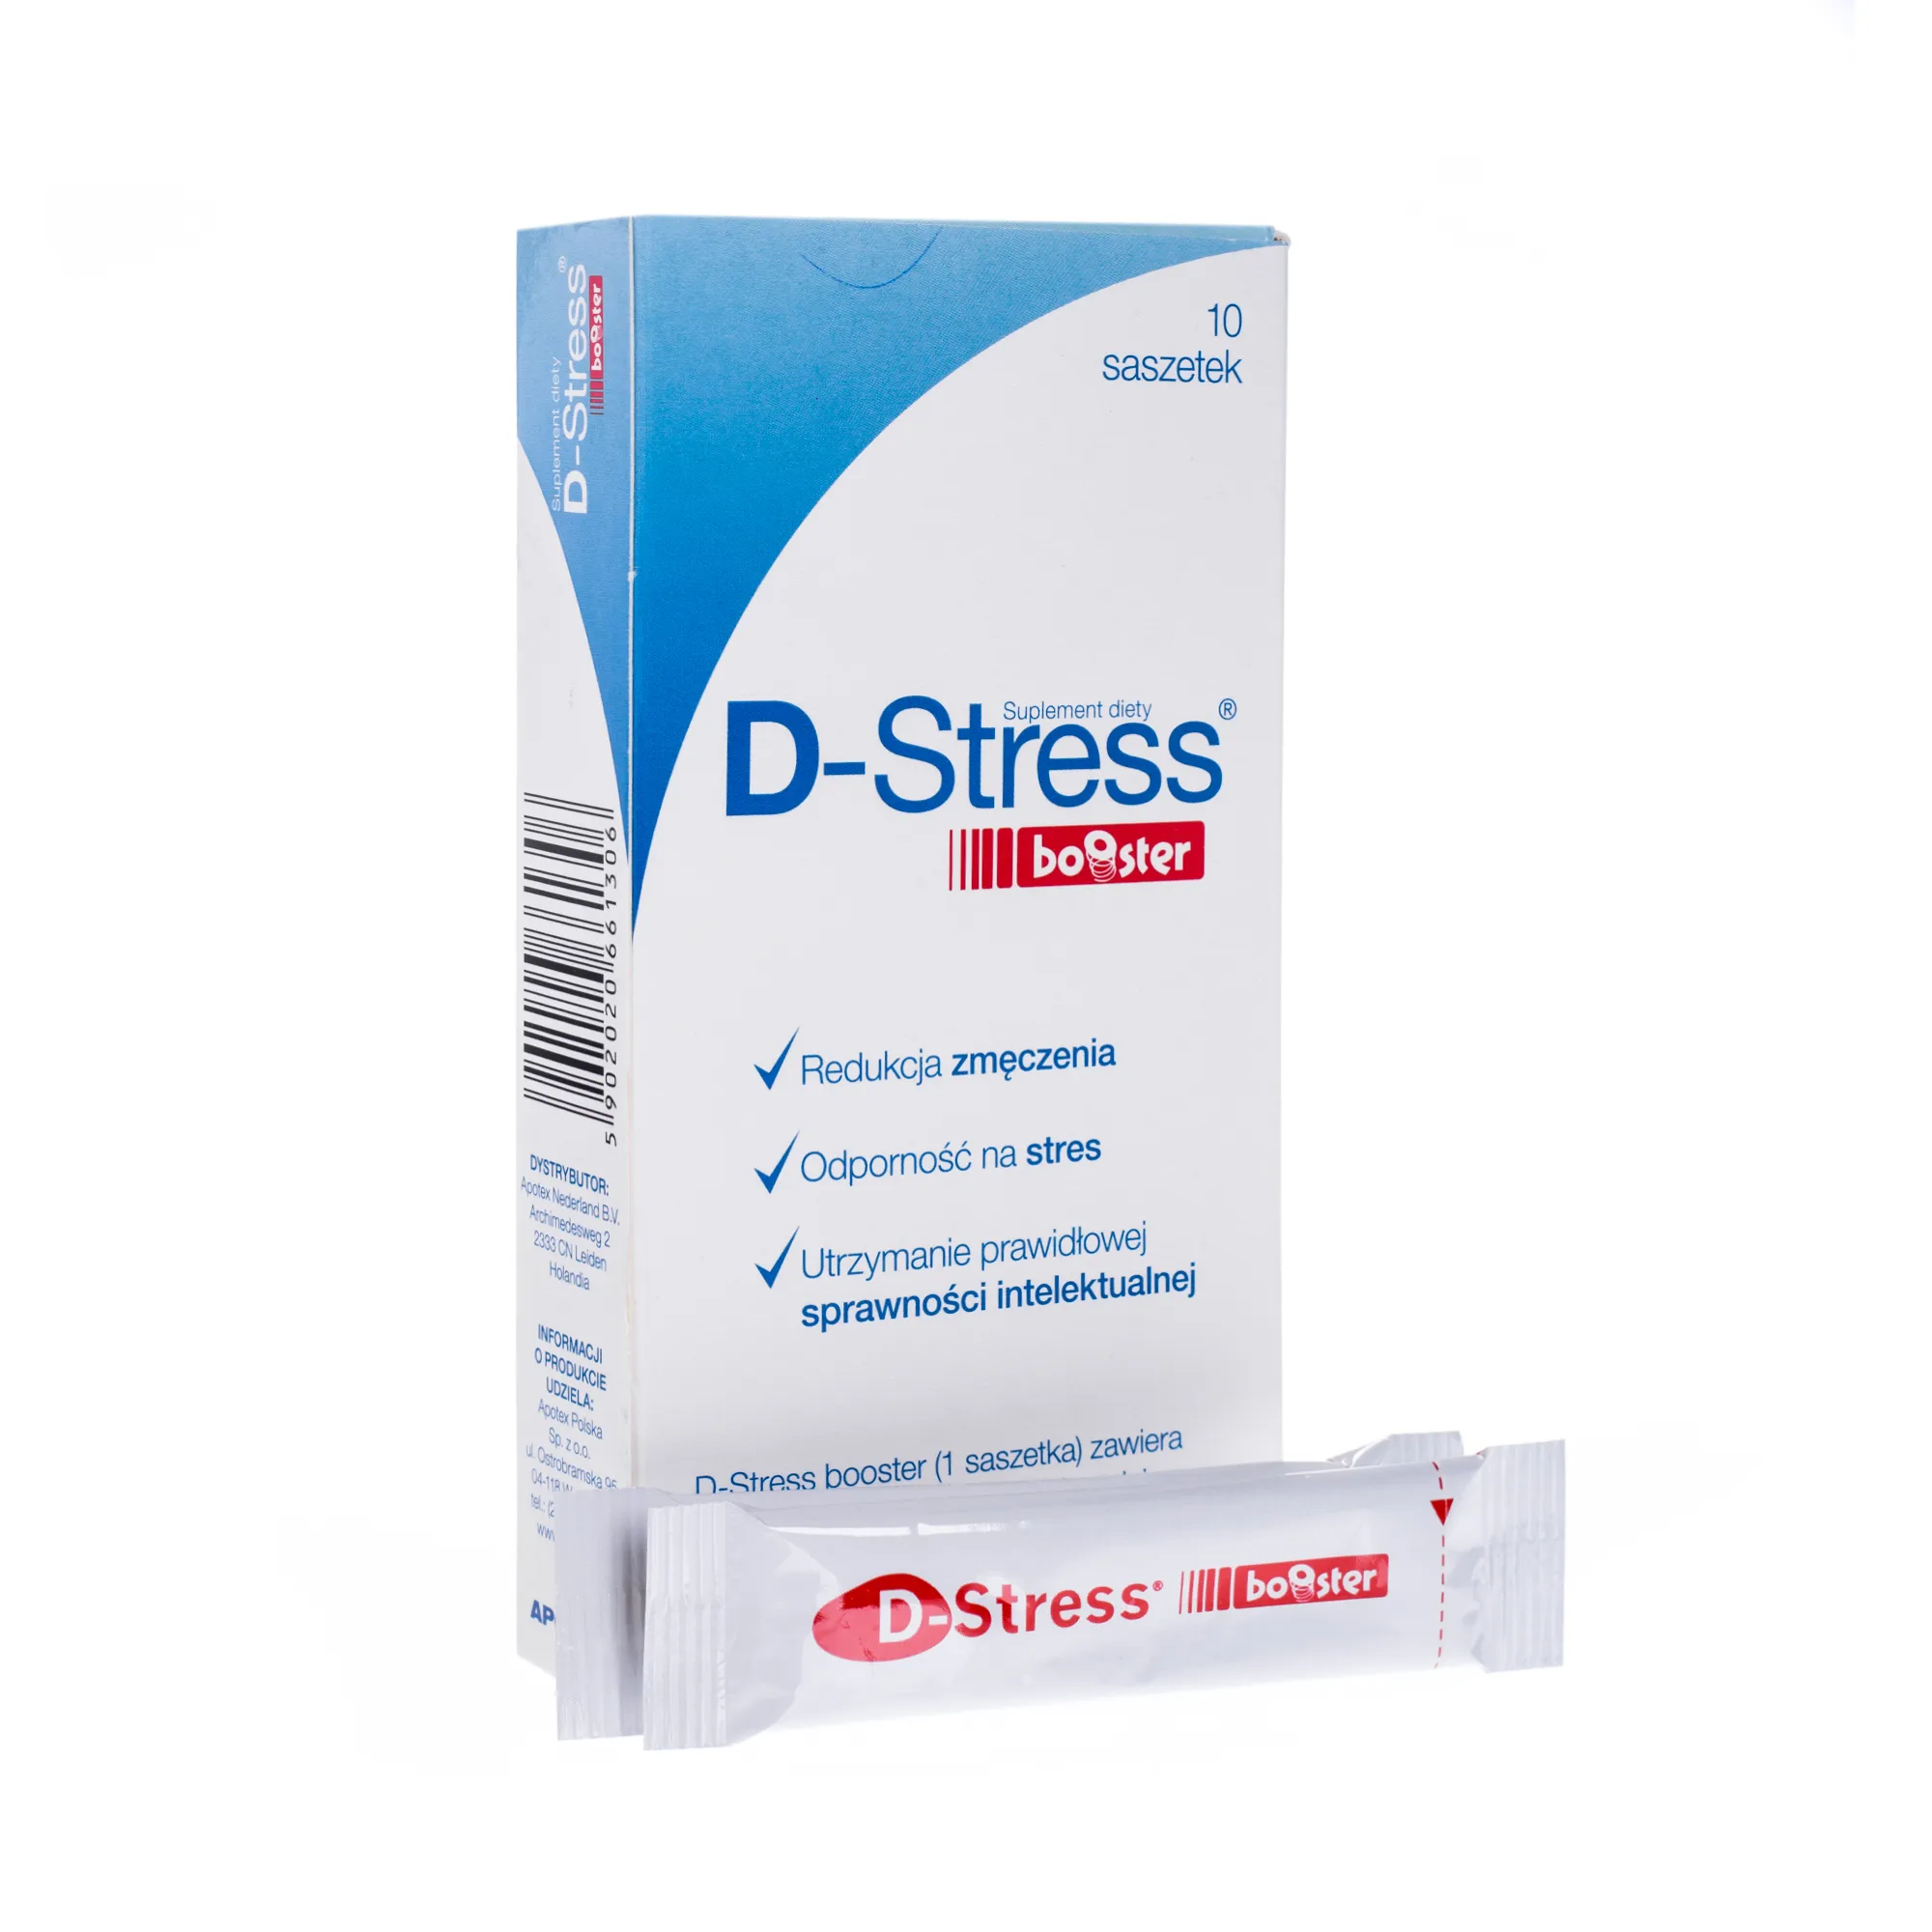 D-Stress booster, suplement diety, 10 saszetek 